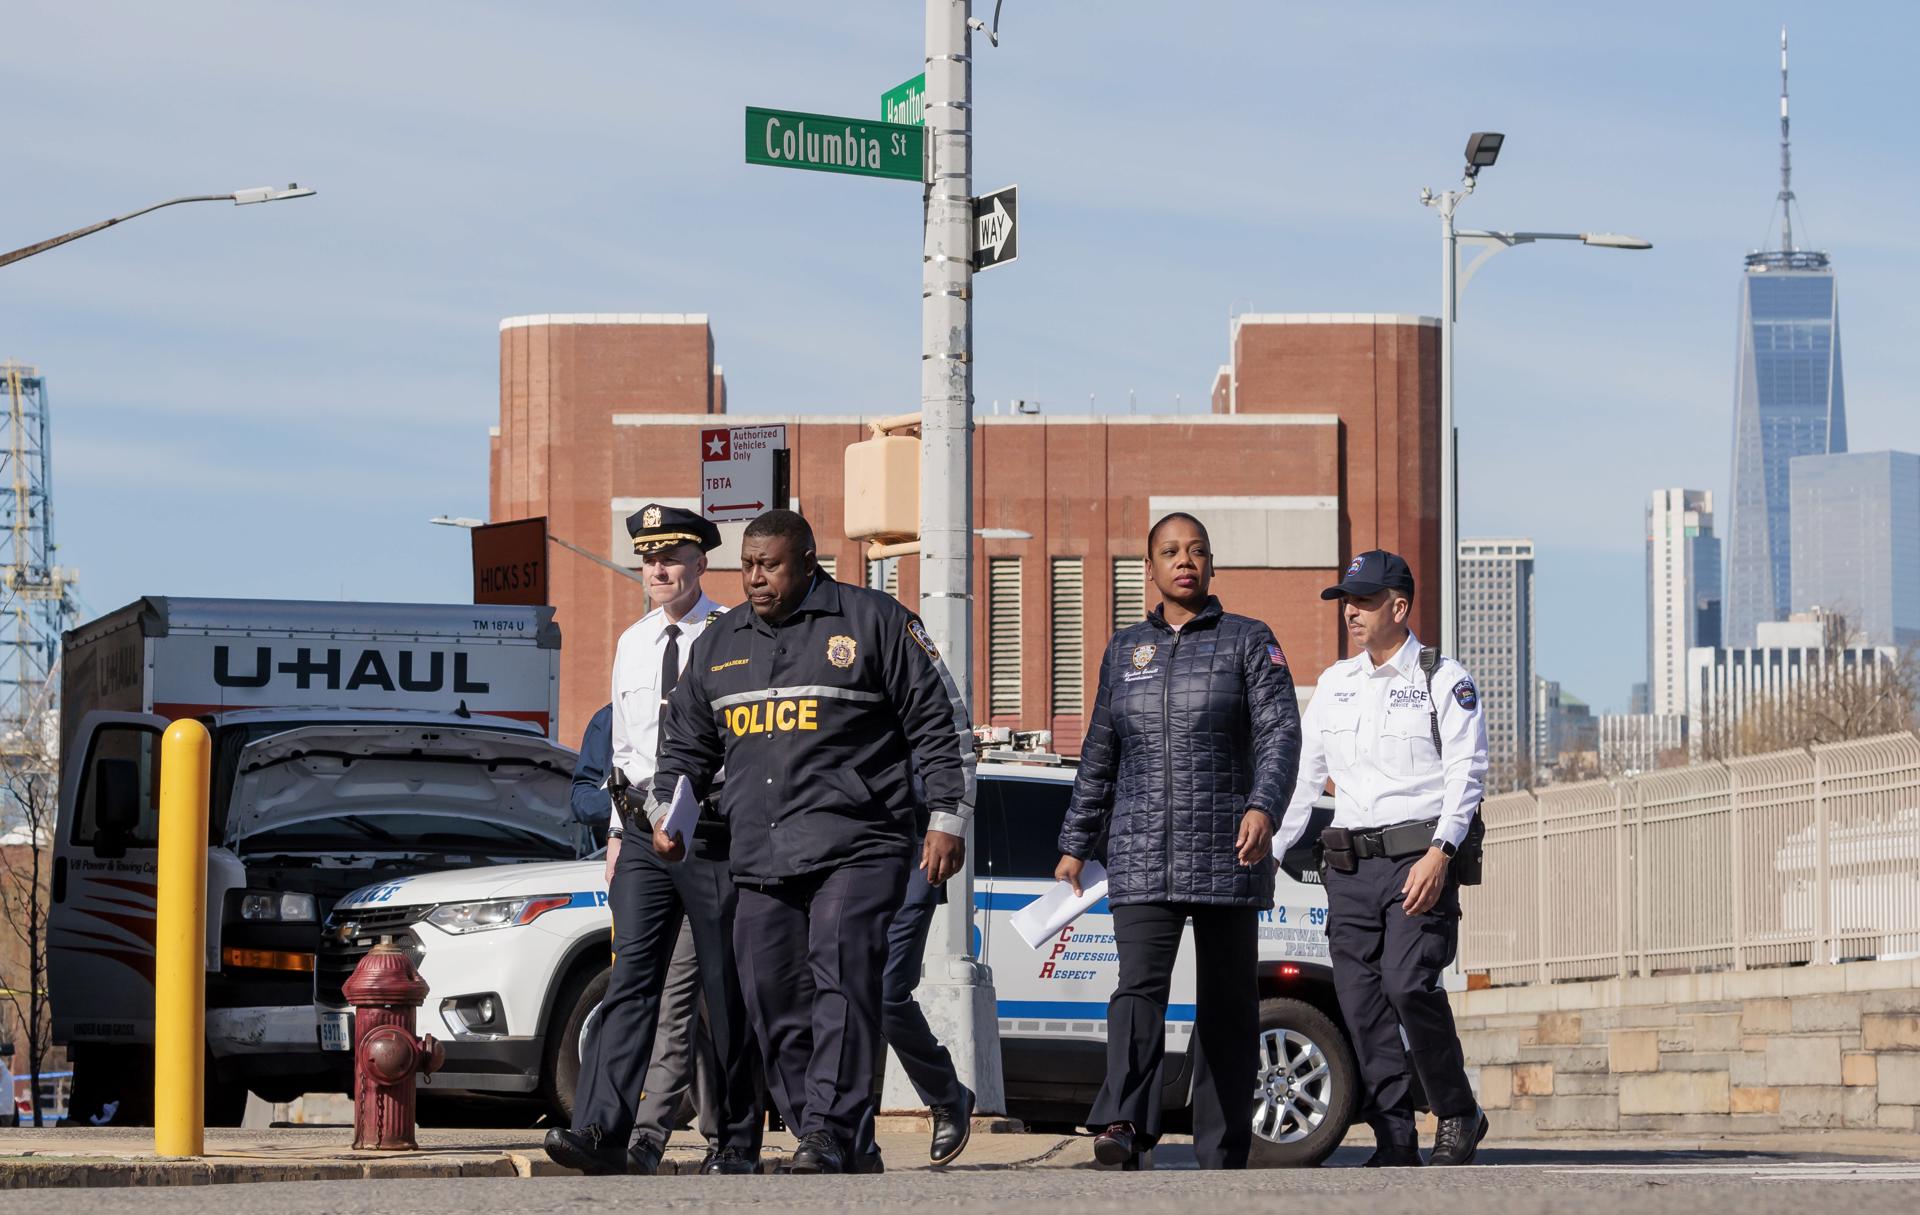 La jefa de la Policía de la ciudad de Nueva York, Keechant Sewell (2d), llega este 13 de febrero, a la escena de un accidente, donde un camión de mudanzas de la compañía U-haul (i) fue detenido, después de atropellar a varios peatones, en el distrito de Brooklyn, en Nueva York (NY,EE.UU.). EFE/Justin Lane